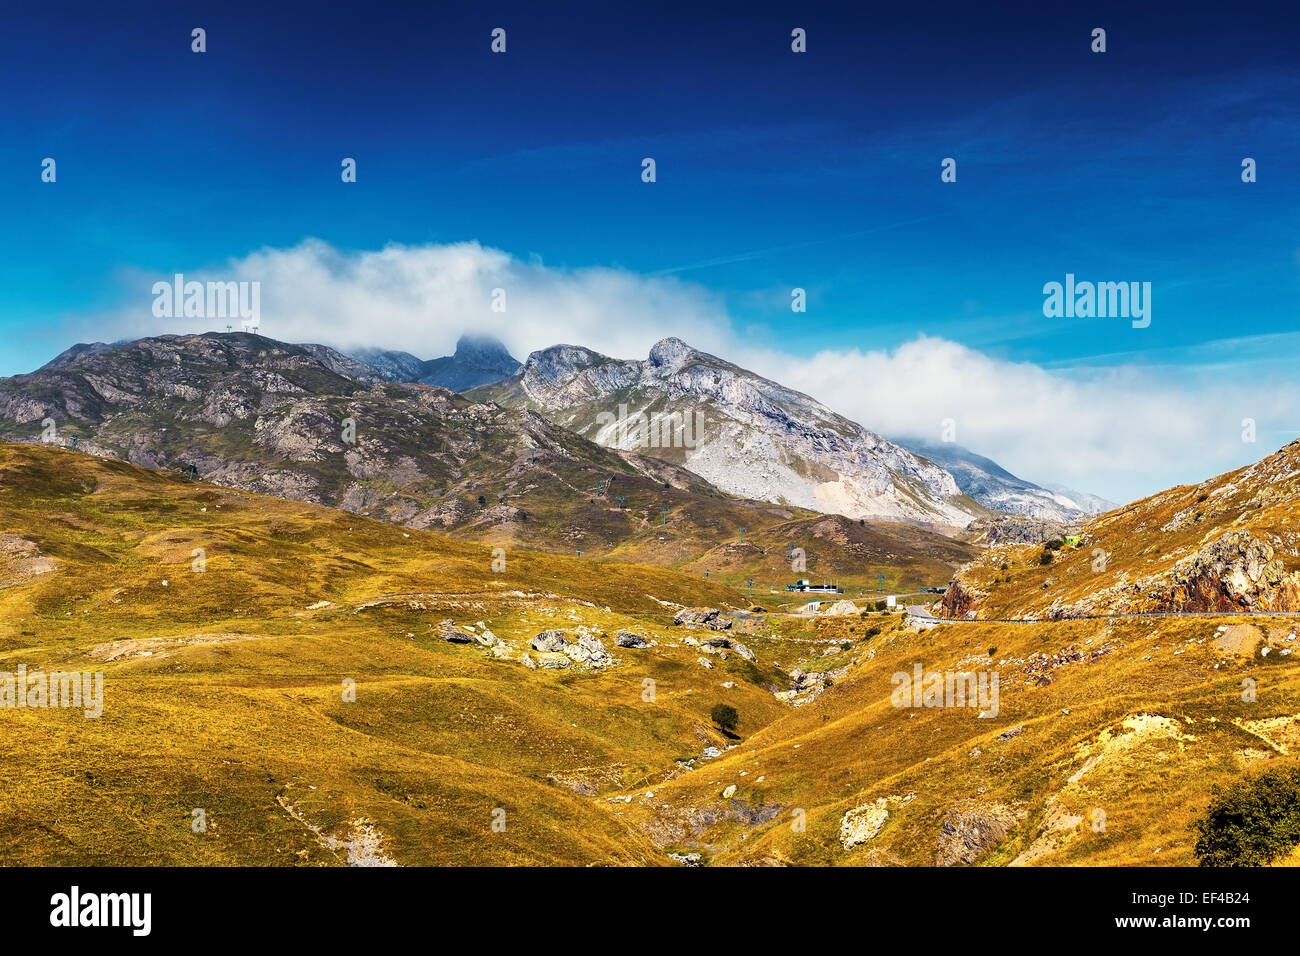 High mountains in Europe at autumn season. Stock Photo